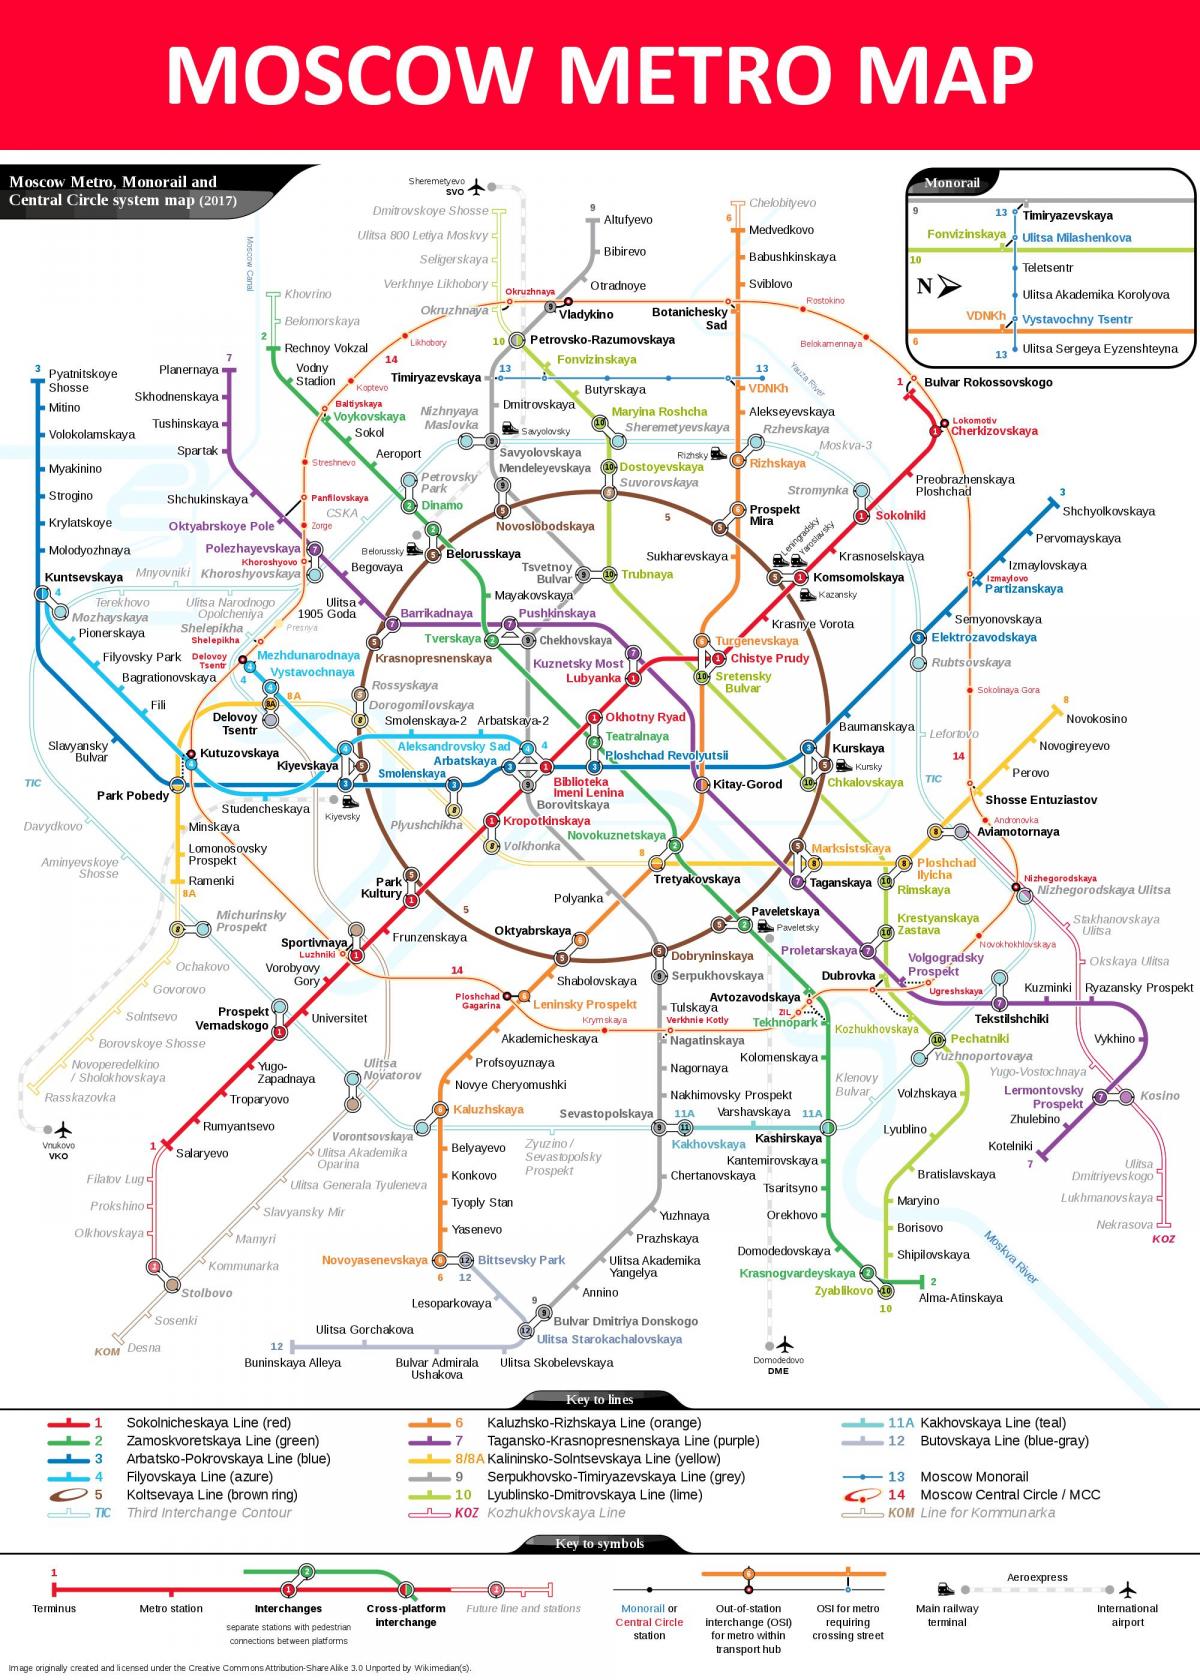 kituo cha metro Moscow ramani